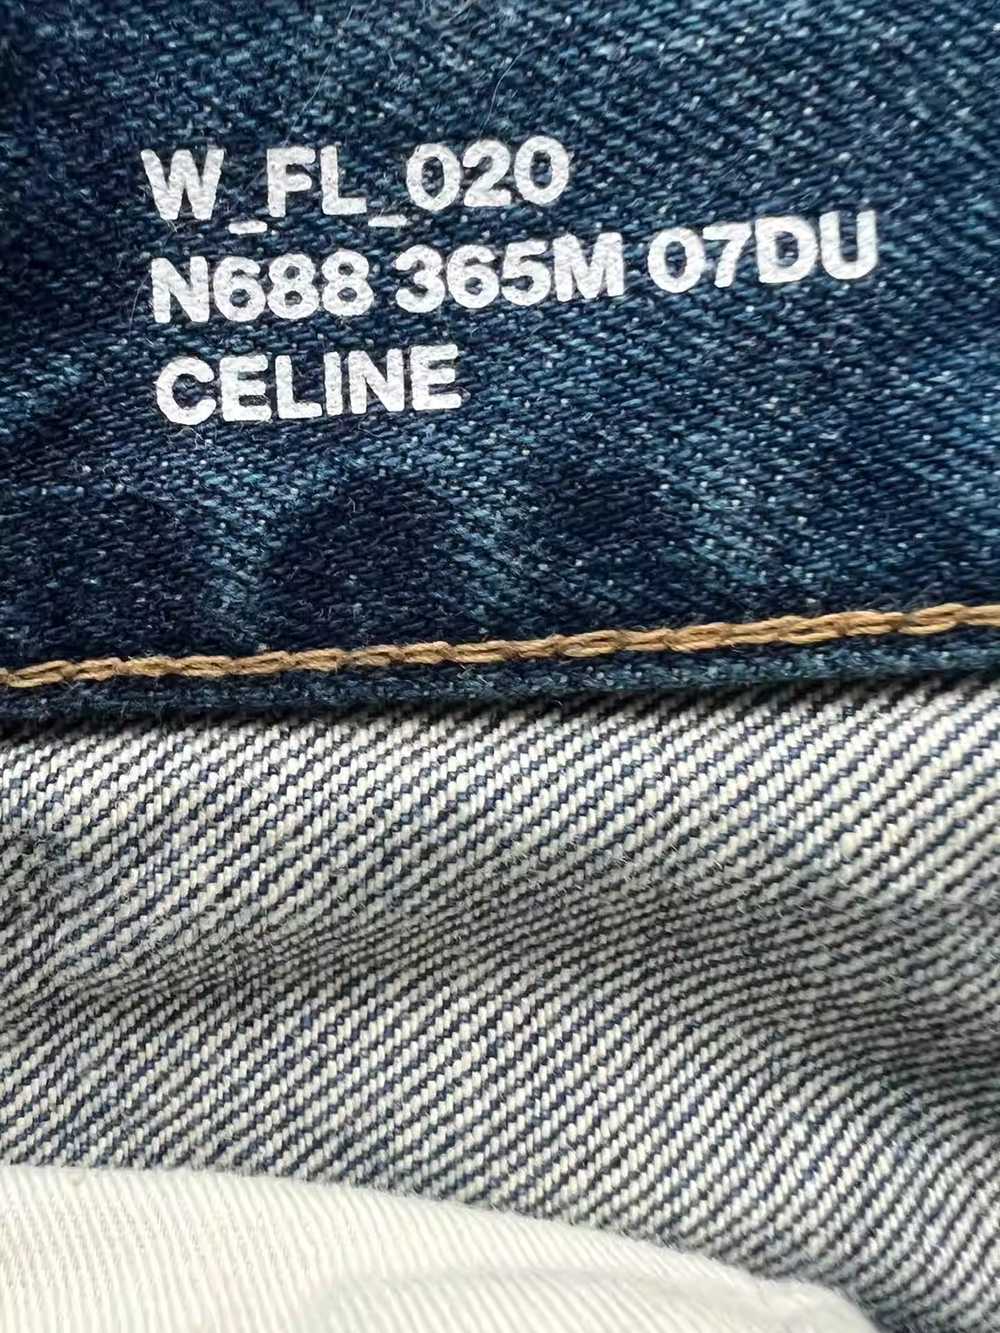 Celine celine flared jeans - image 3